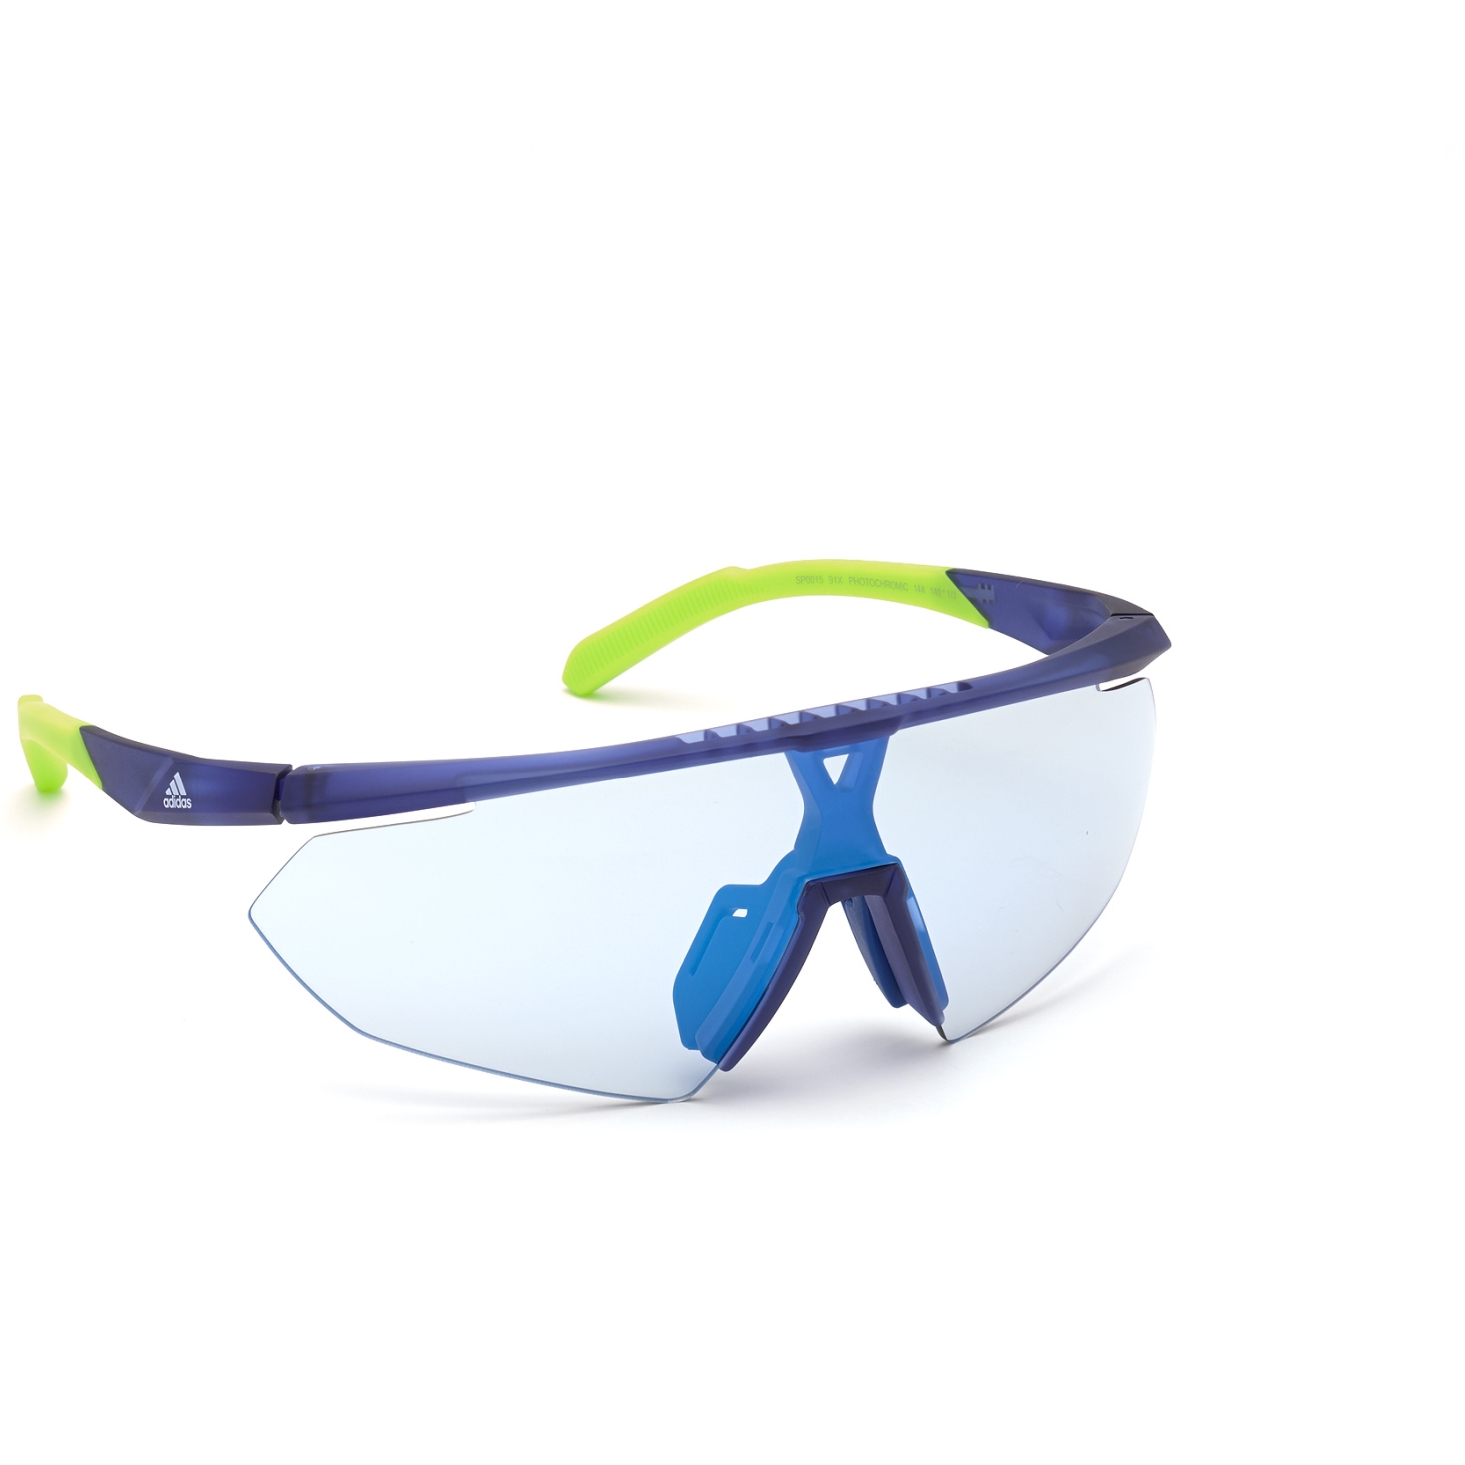 Produktbild von adidas Sp0015 Injected Sonnenbrille - Frosted Blue / Vario Mirror Blue